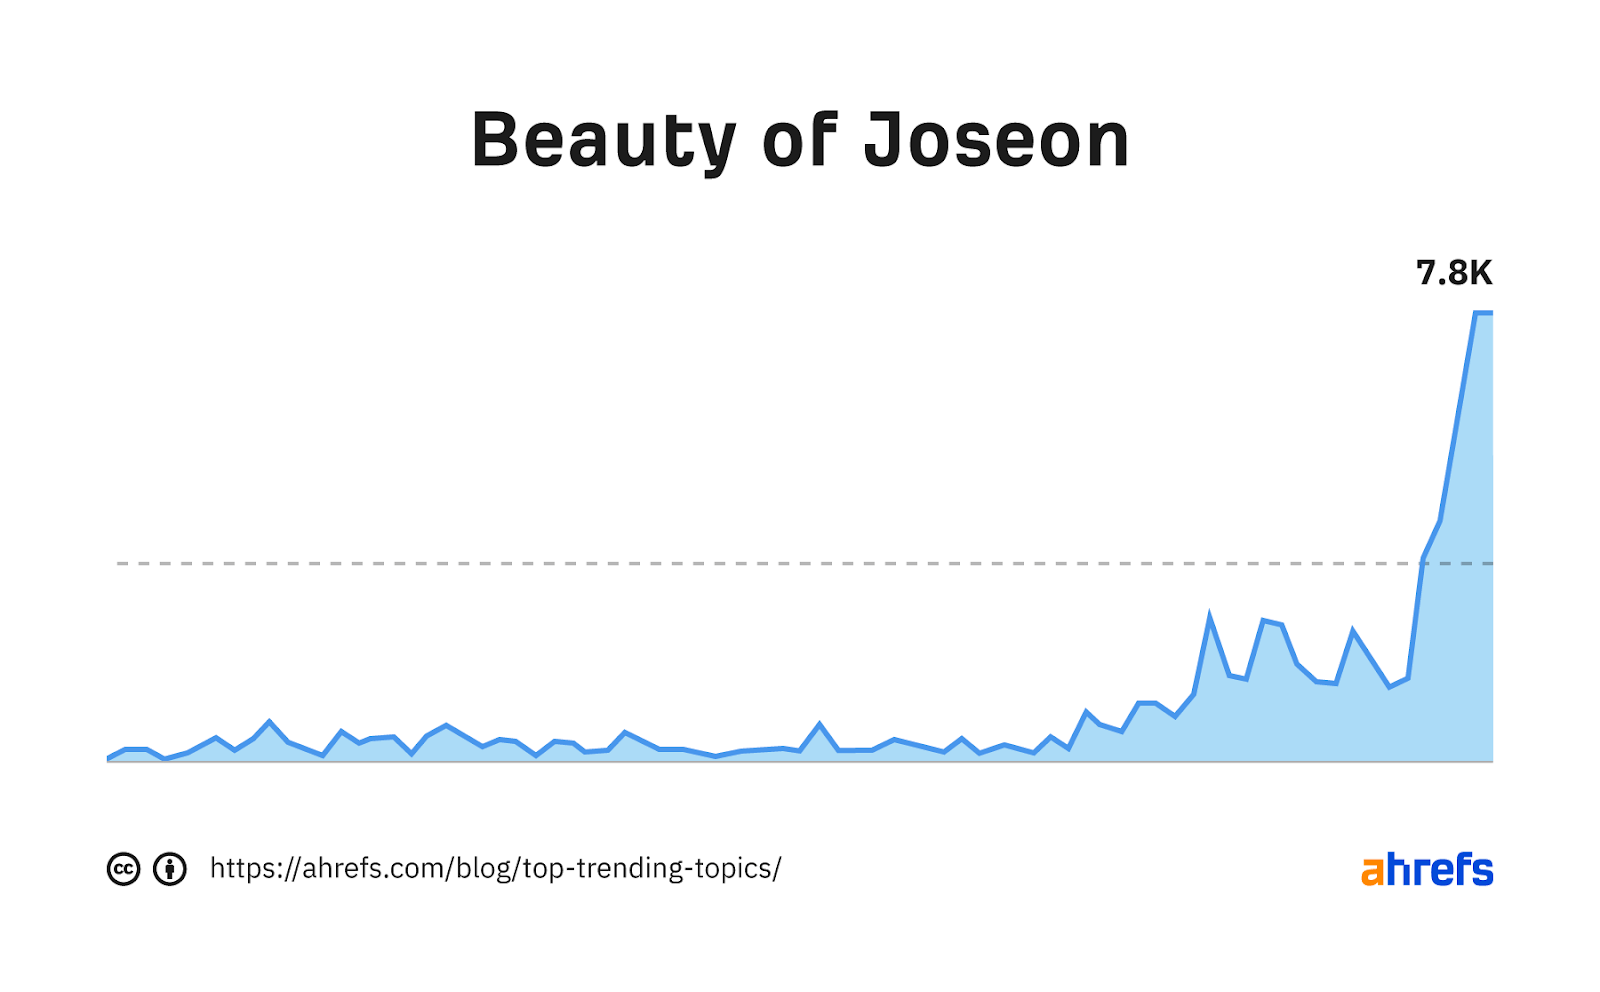 نمودار روند برای کلمه کلیدی "زیبایی جوزون"